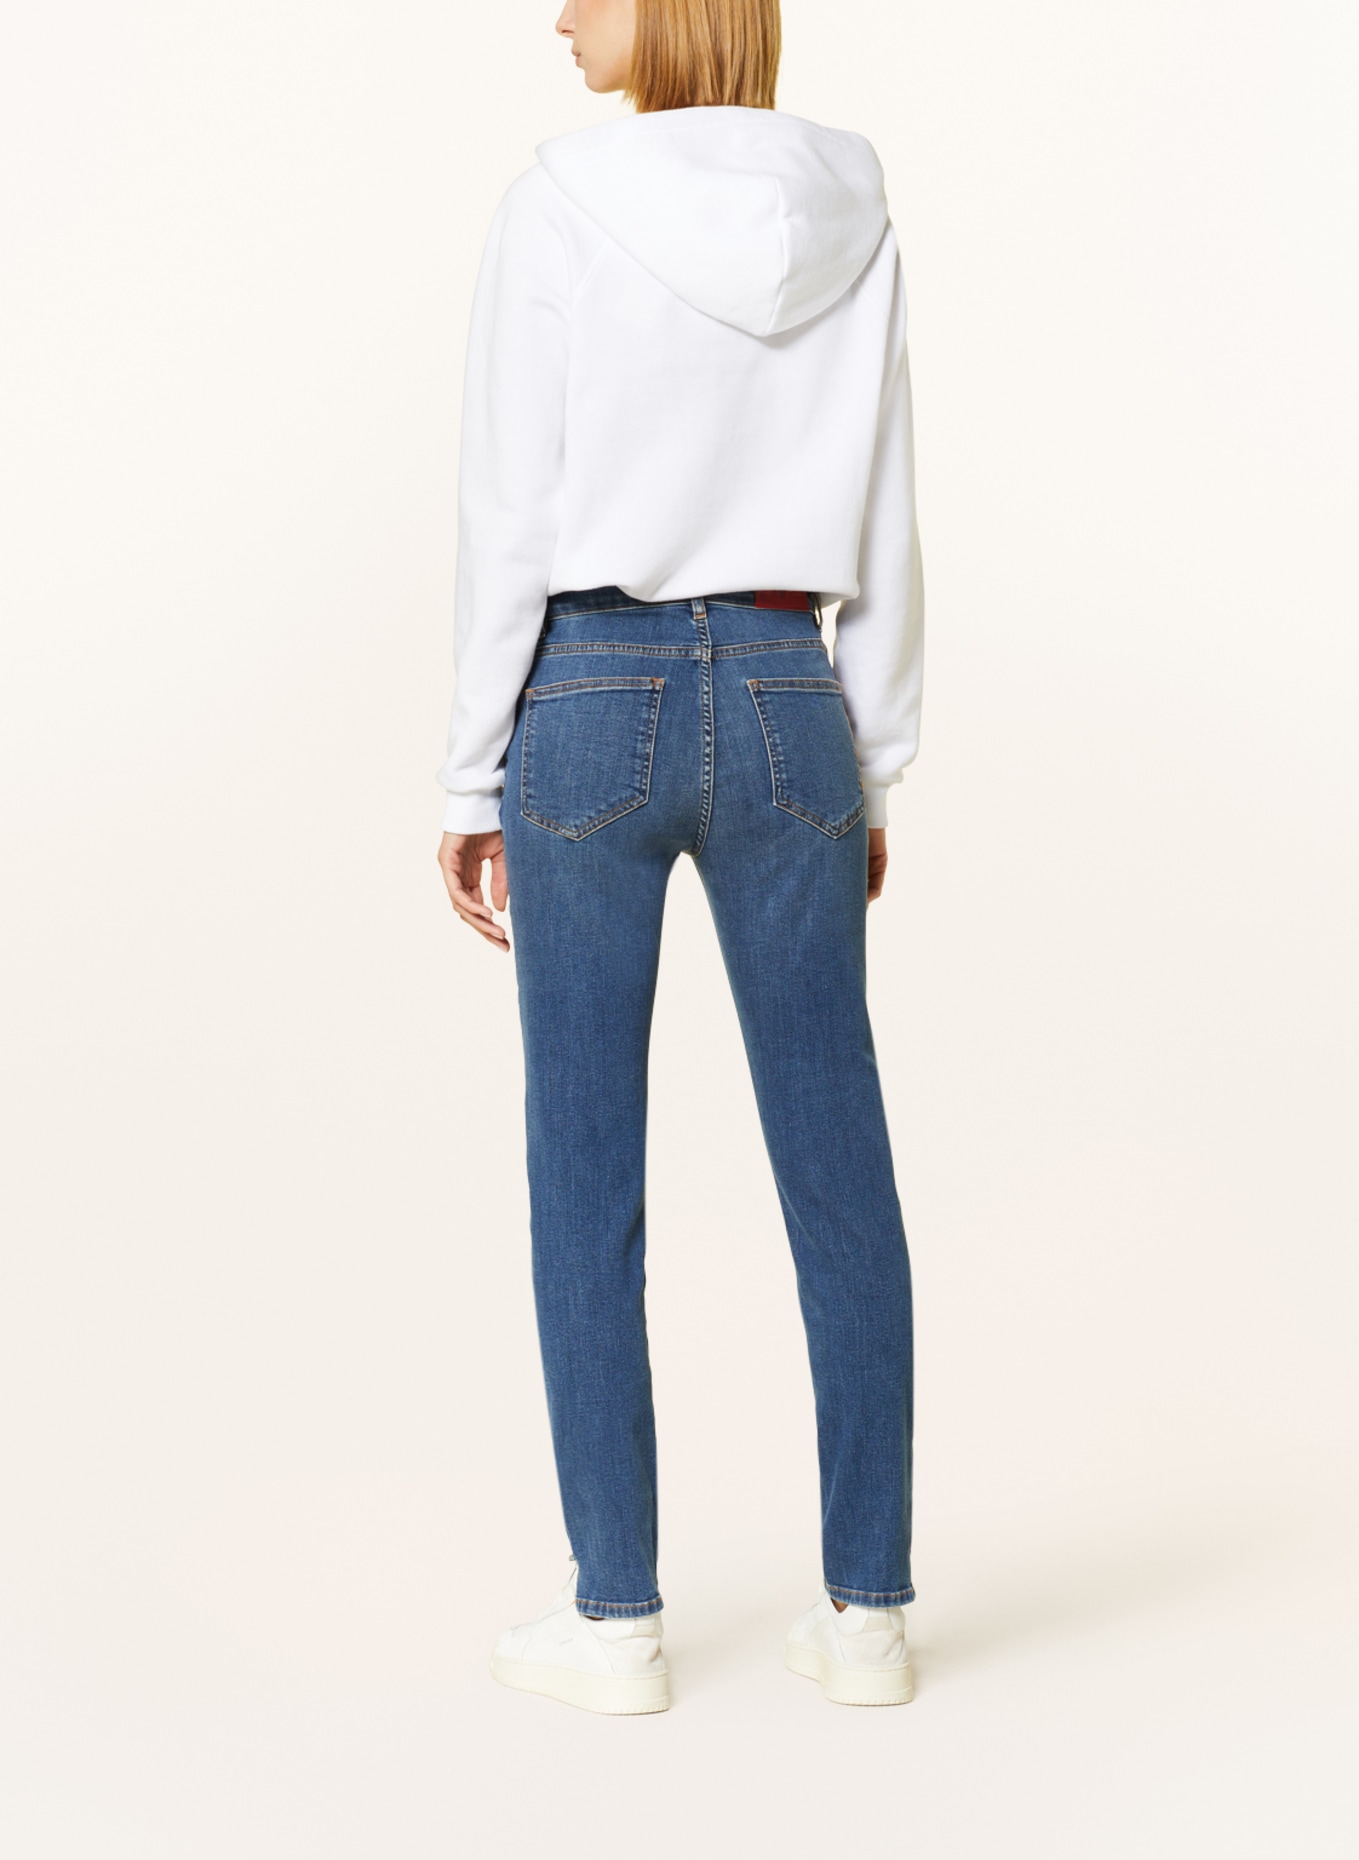 pamela henson Jeans, Color: LAW light authentic blau denim (Image 3)